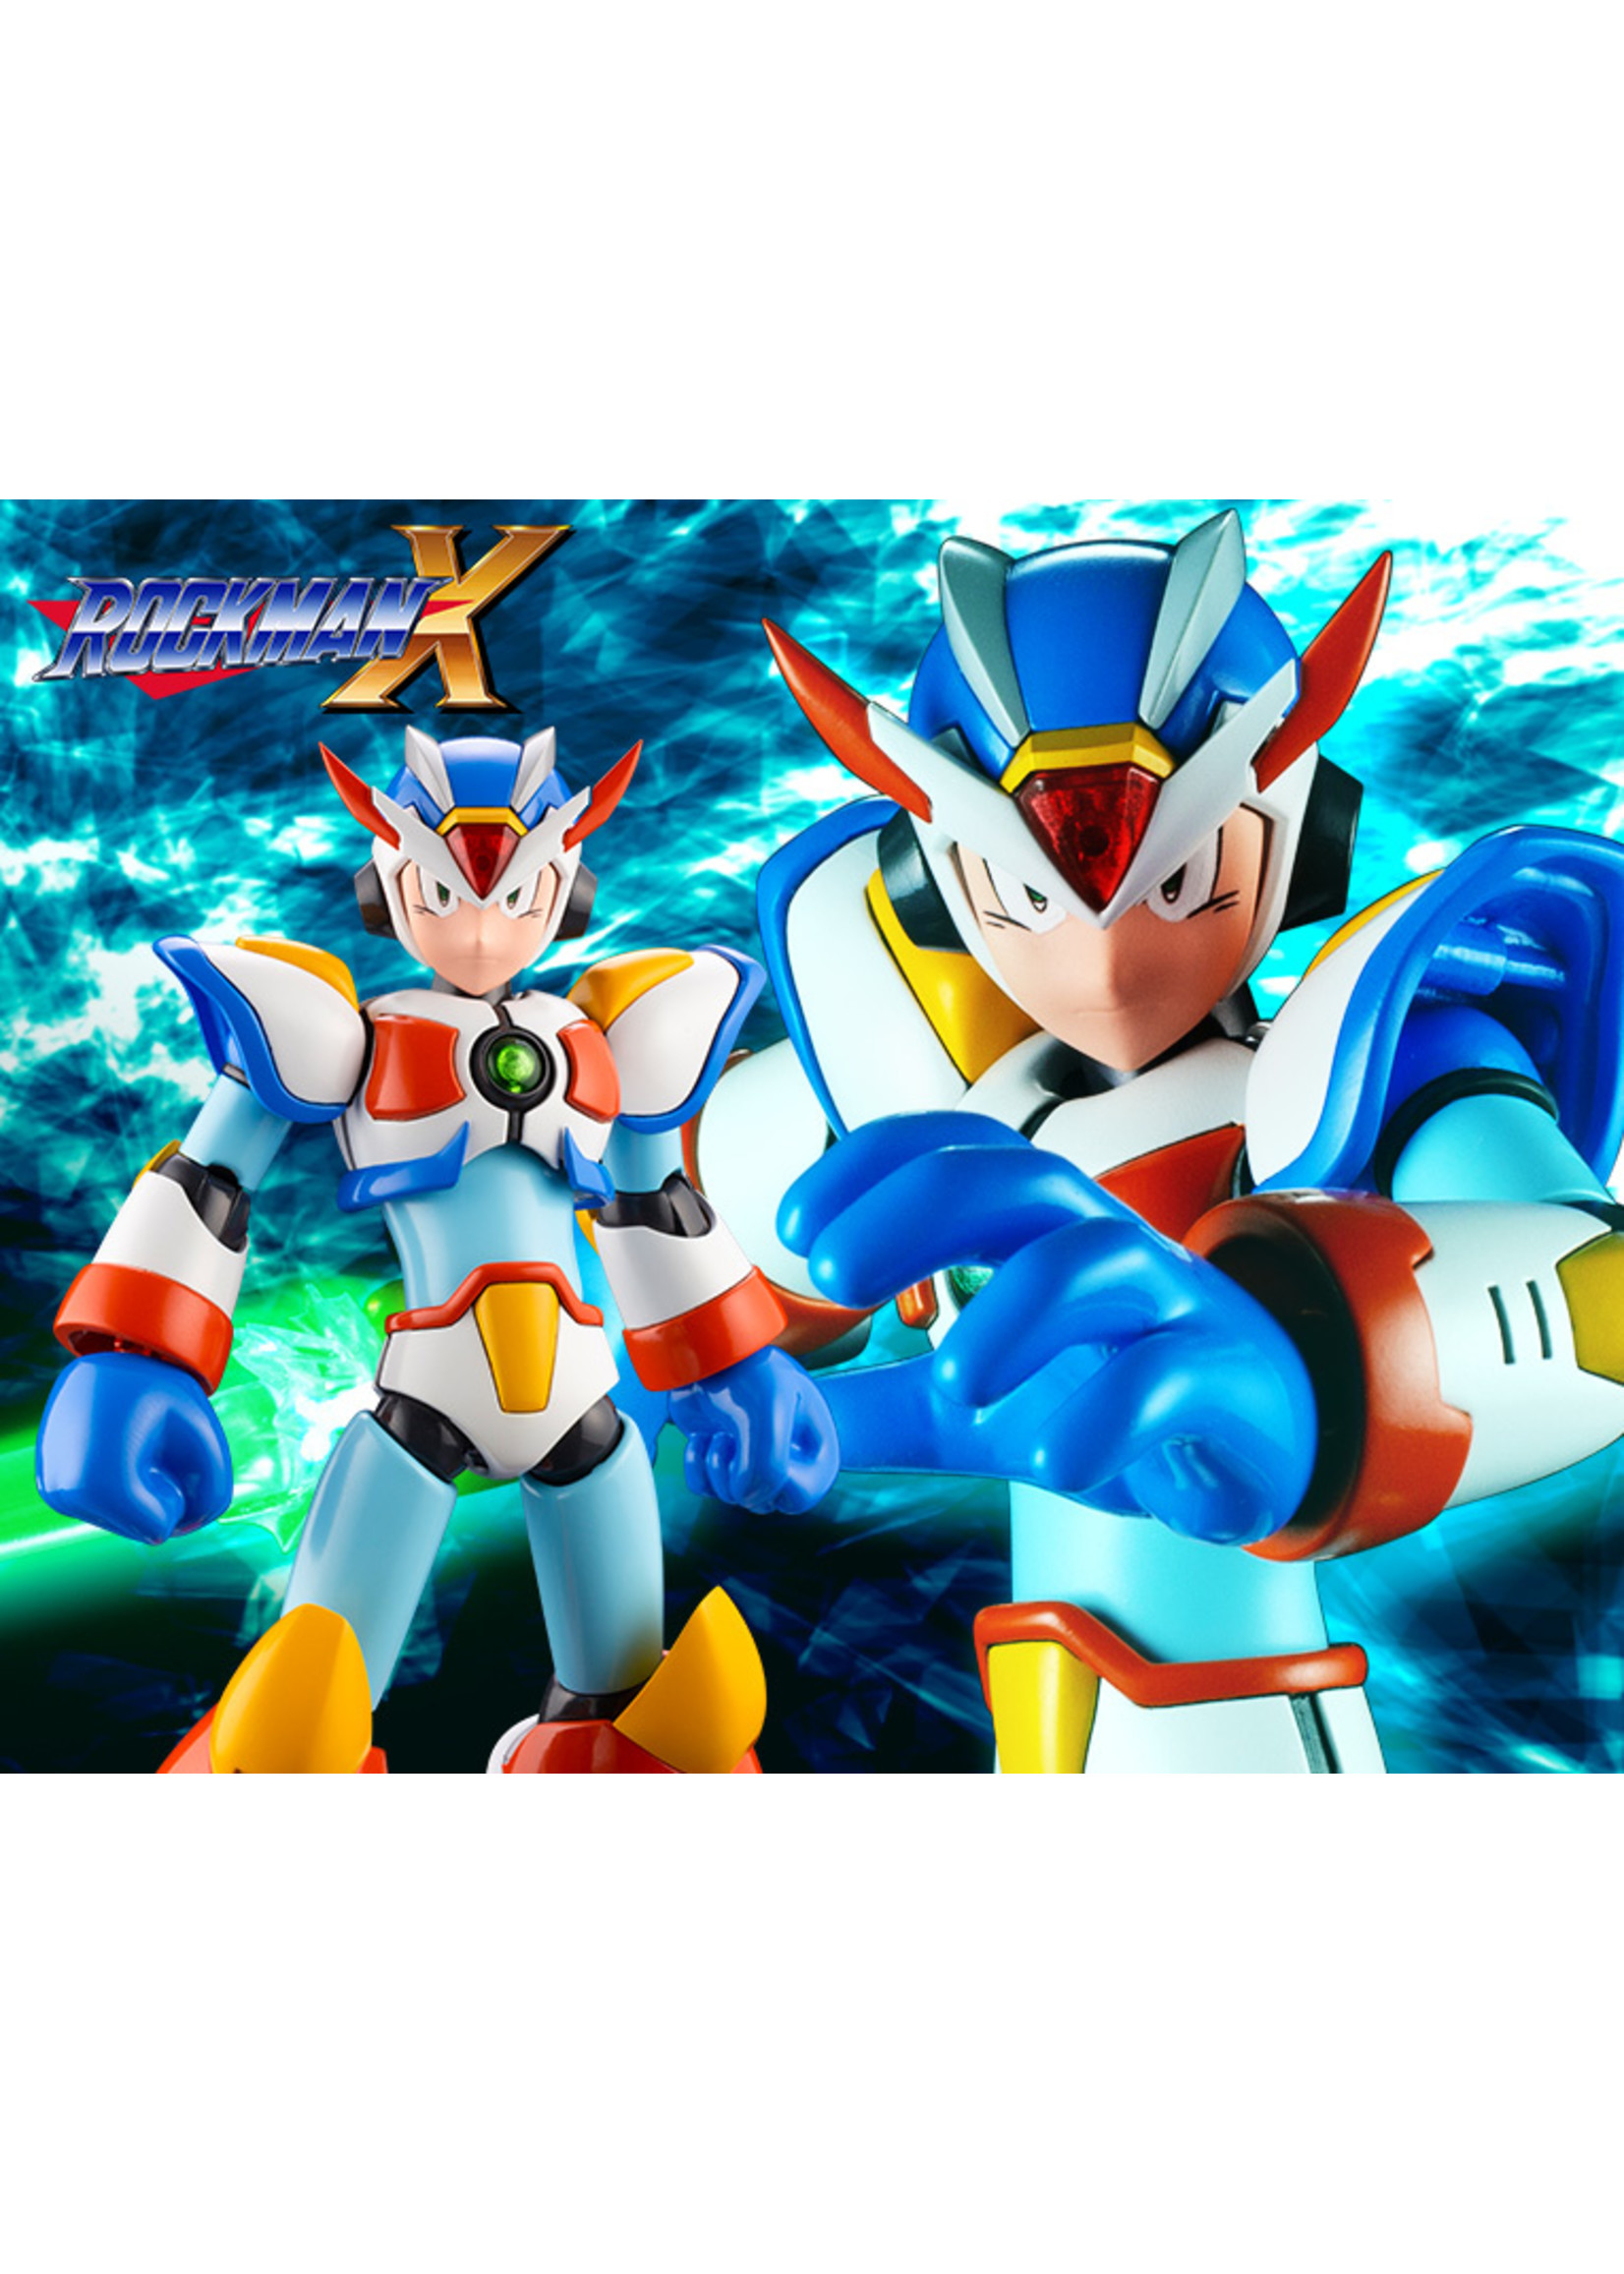 Kotobukiya KP639 - Mega Man X Max Armor